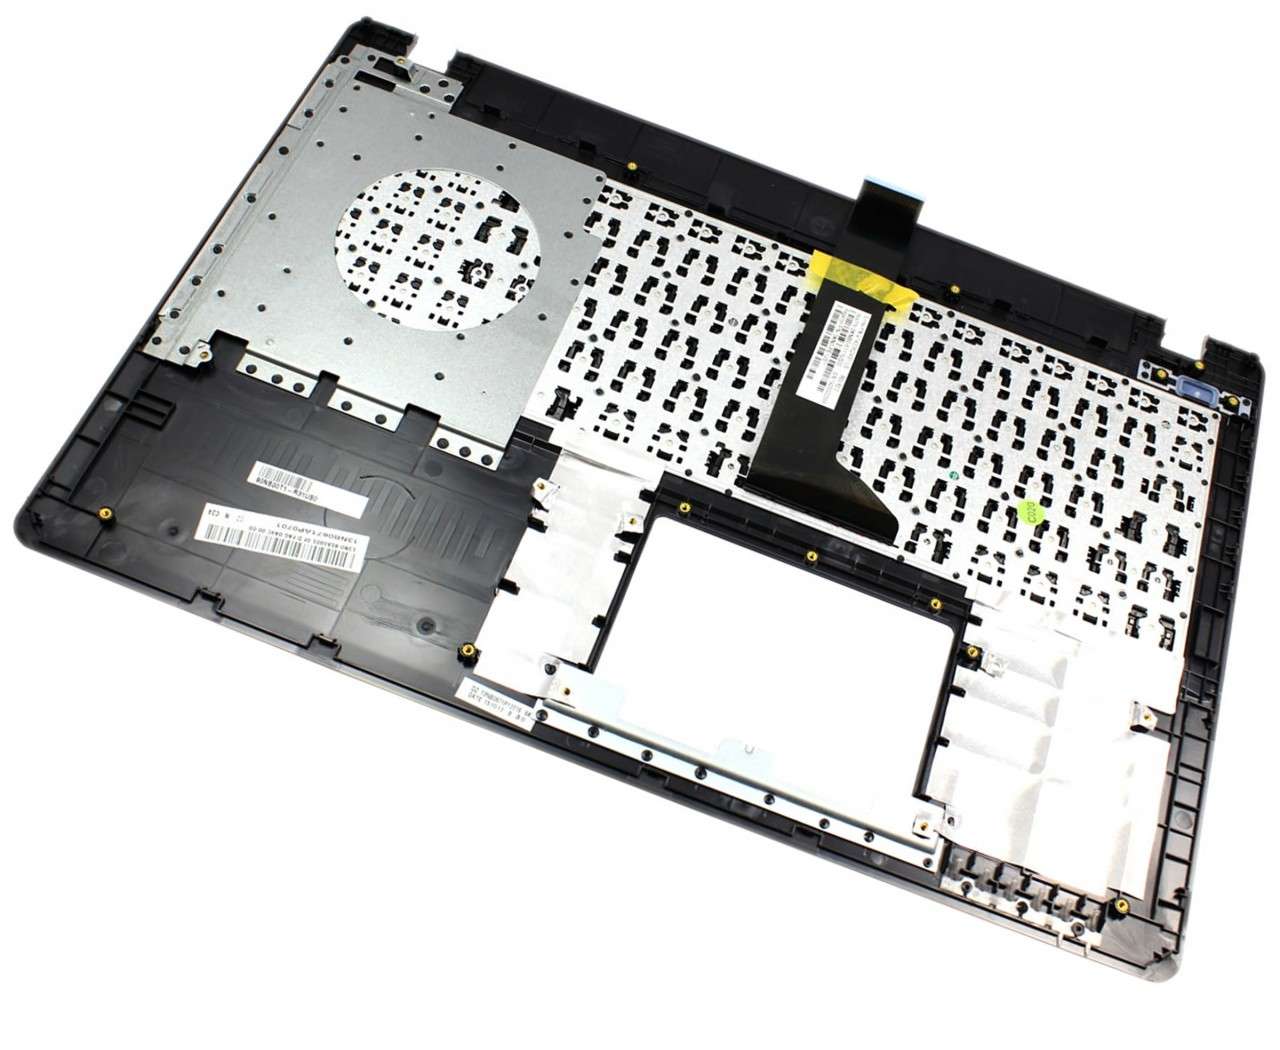 Tastatura Asus X552LD neagra cu Palmrest argintiu